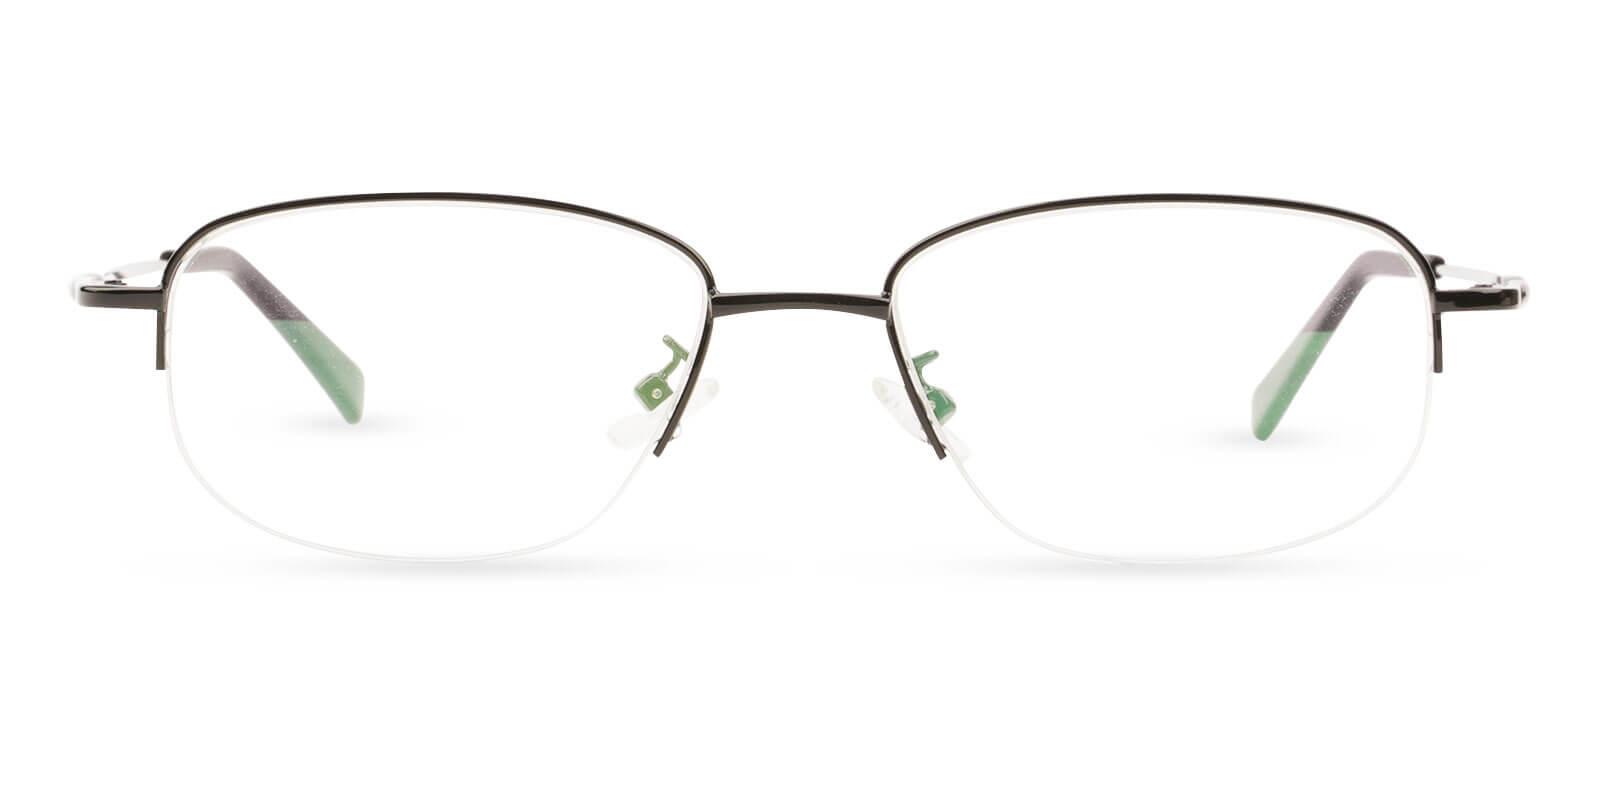 Joshua Black Metal Eyeglasses , NosePads Frames from ABBE Glasses